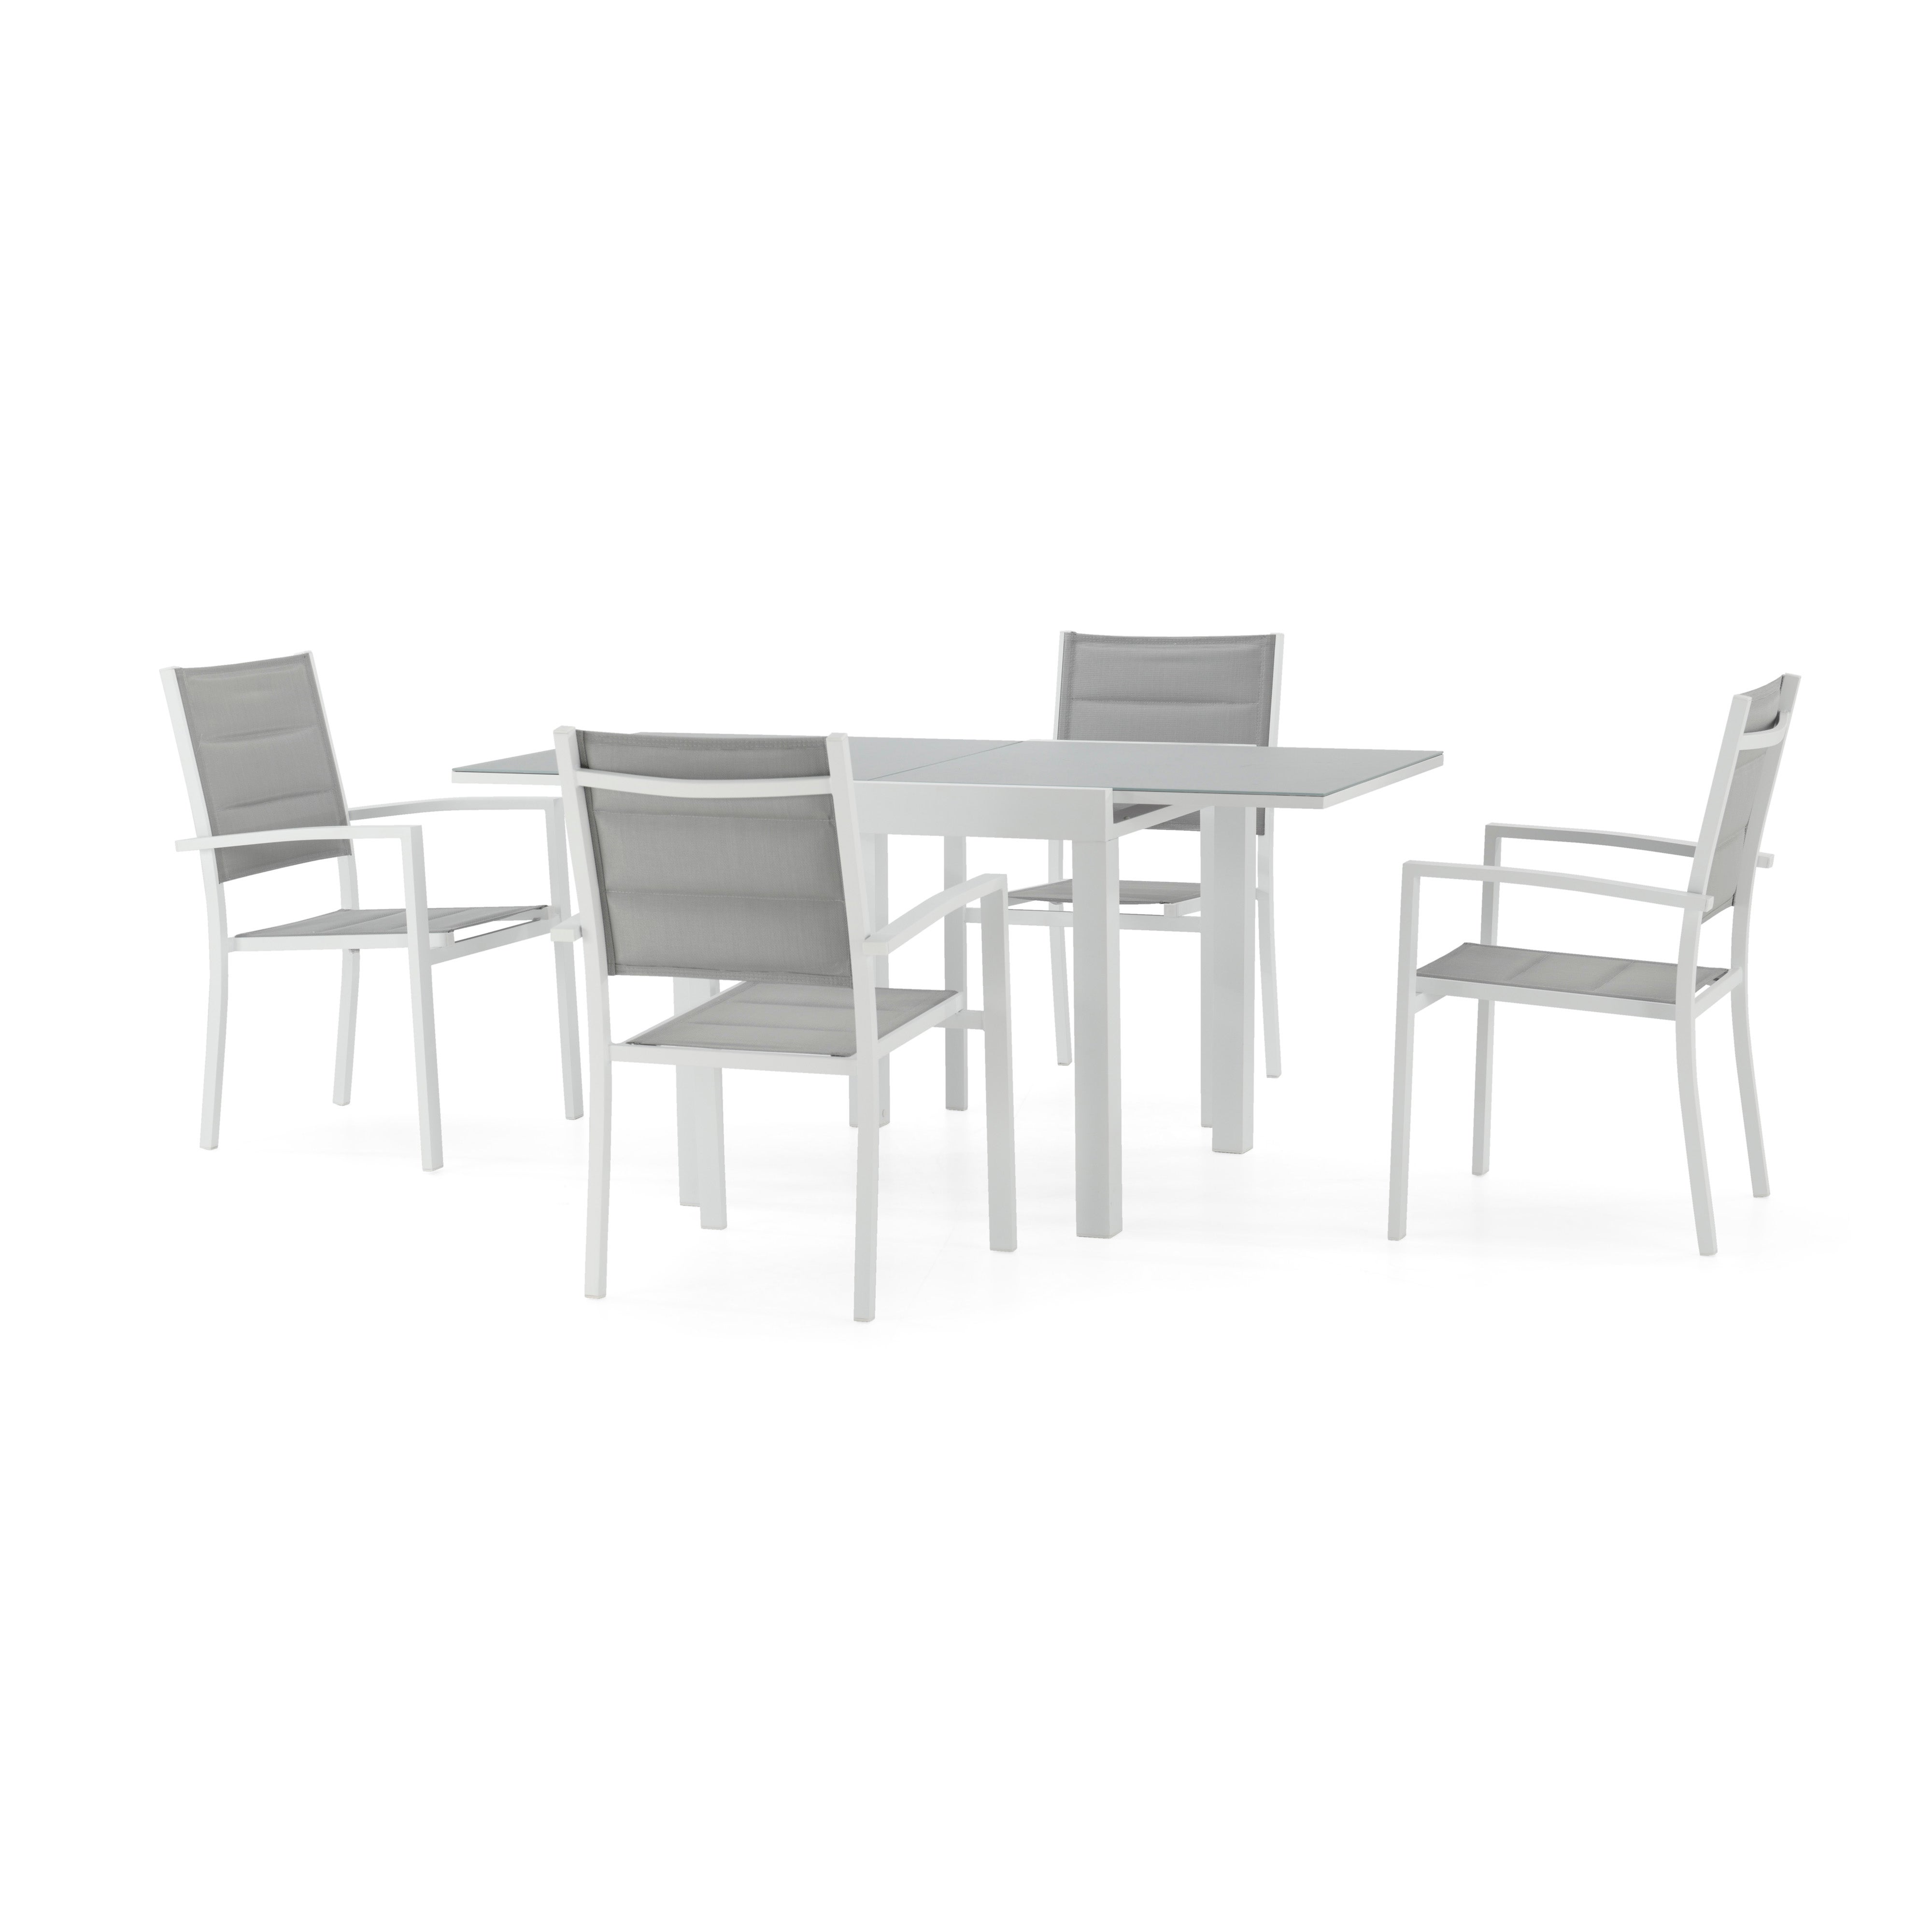 Conjunto mesa jardín 160/80x80 cm y 4 sillas aluminio antracita - Osaka